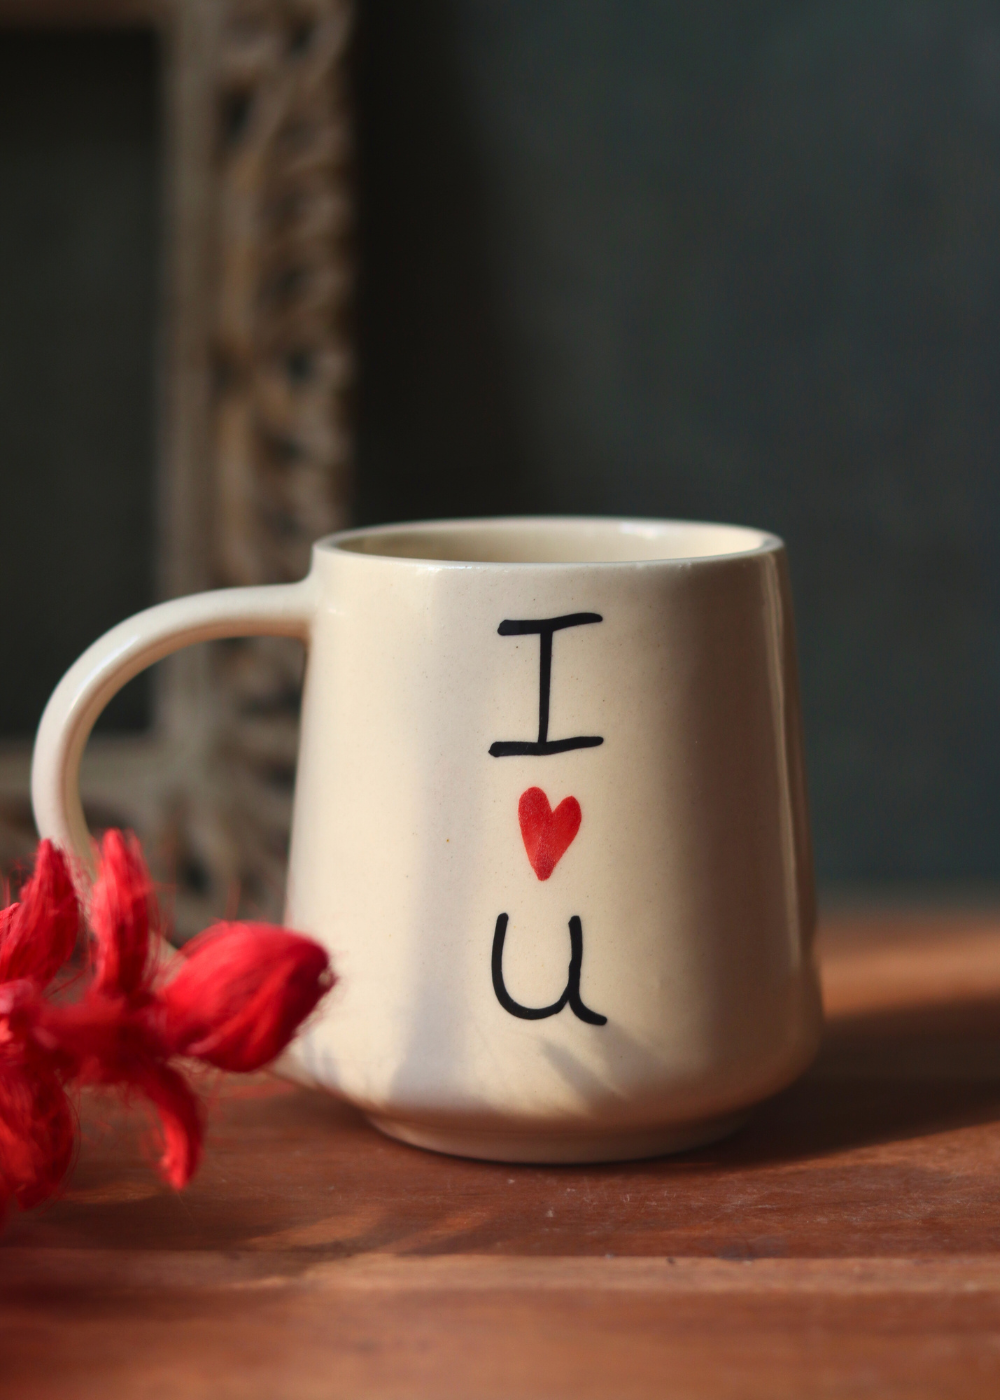 Handmade ceramic i heart you coffee mug